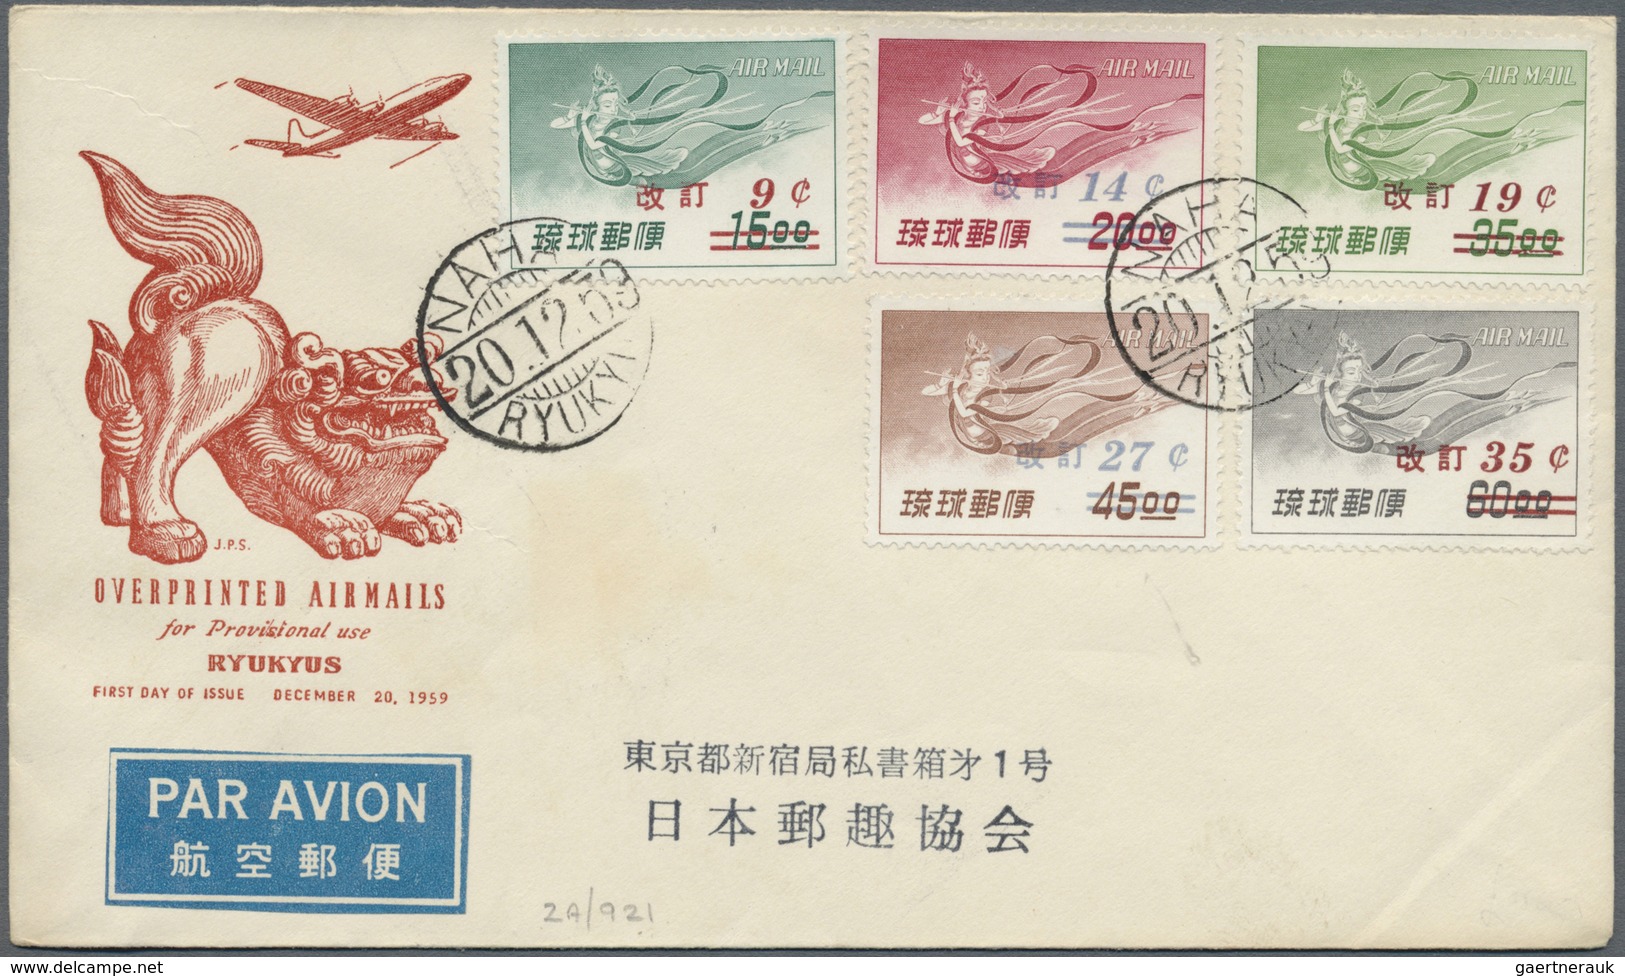 Br/ Japan - Besonderheiten: 1906/1959, incoming mail, returned, field posts, FPO in Japan, Ryukyu, Jap.